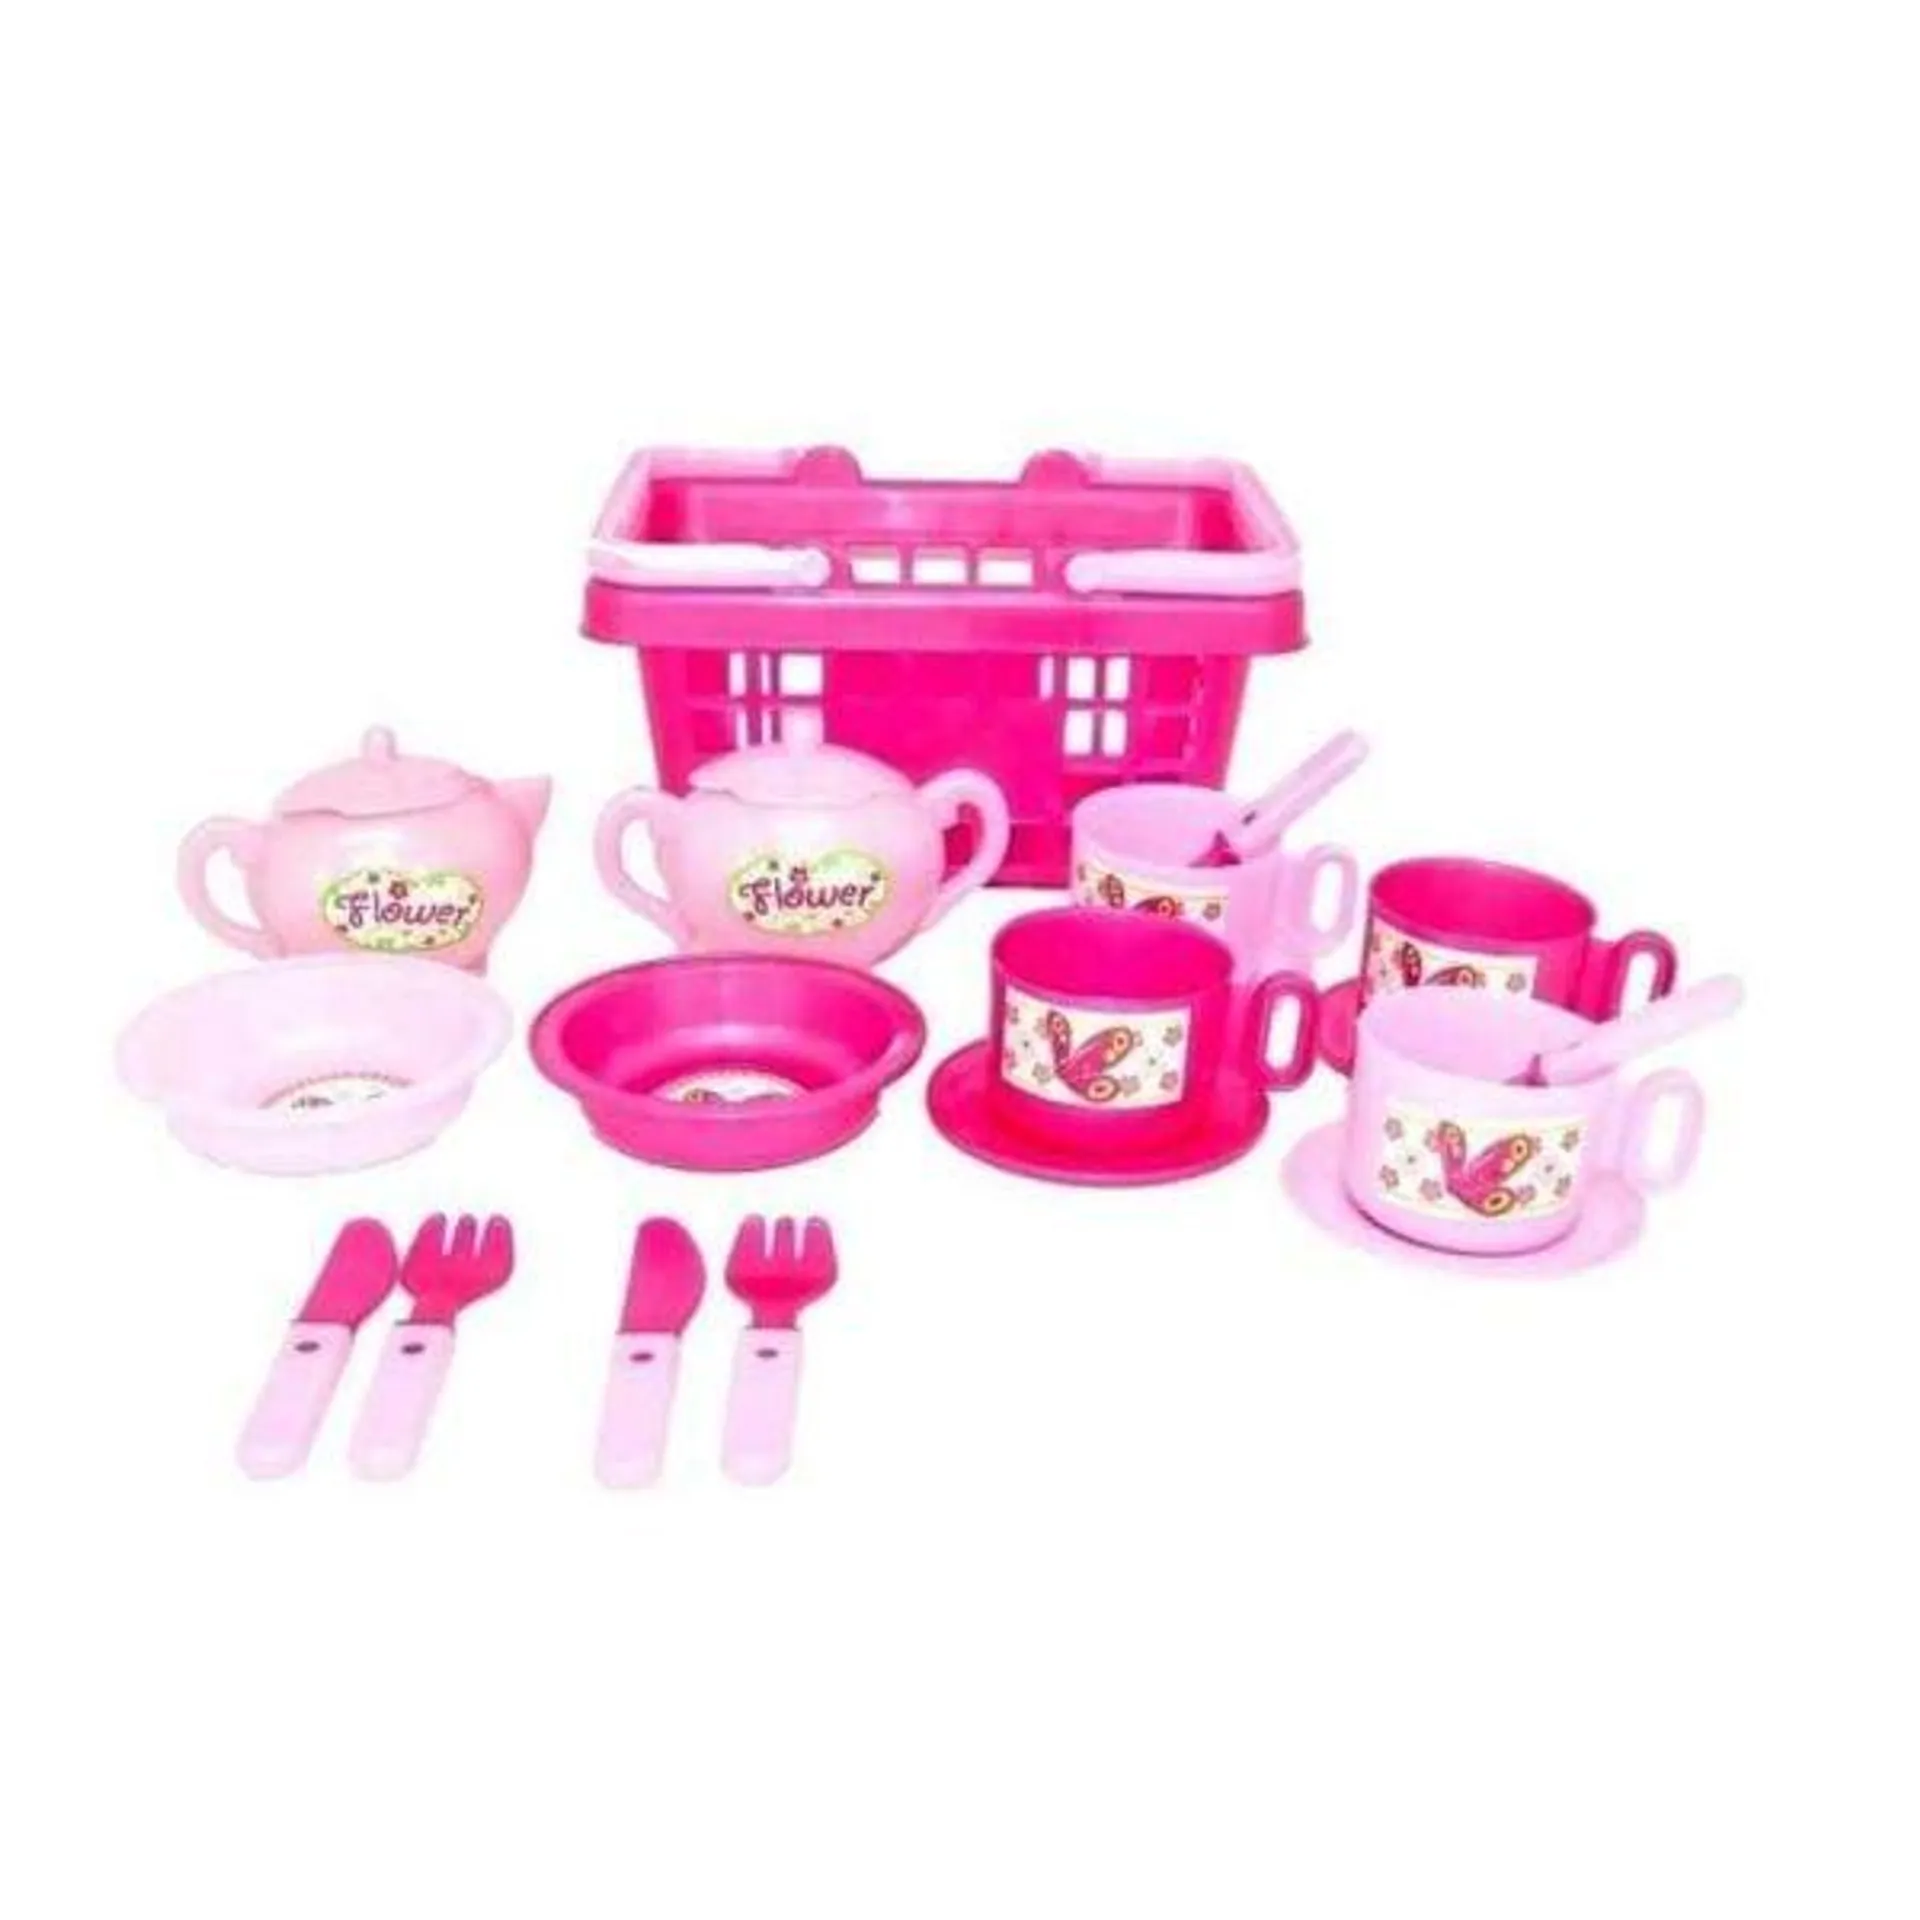 Tea Set in Plastic Basket Pink - 21 Pieces